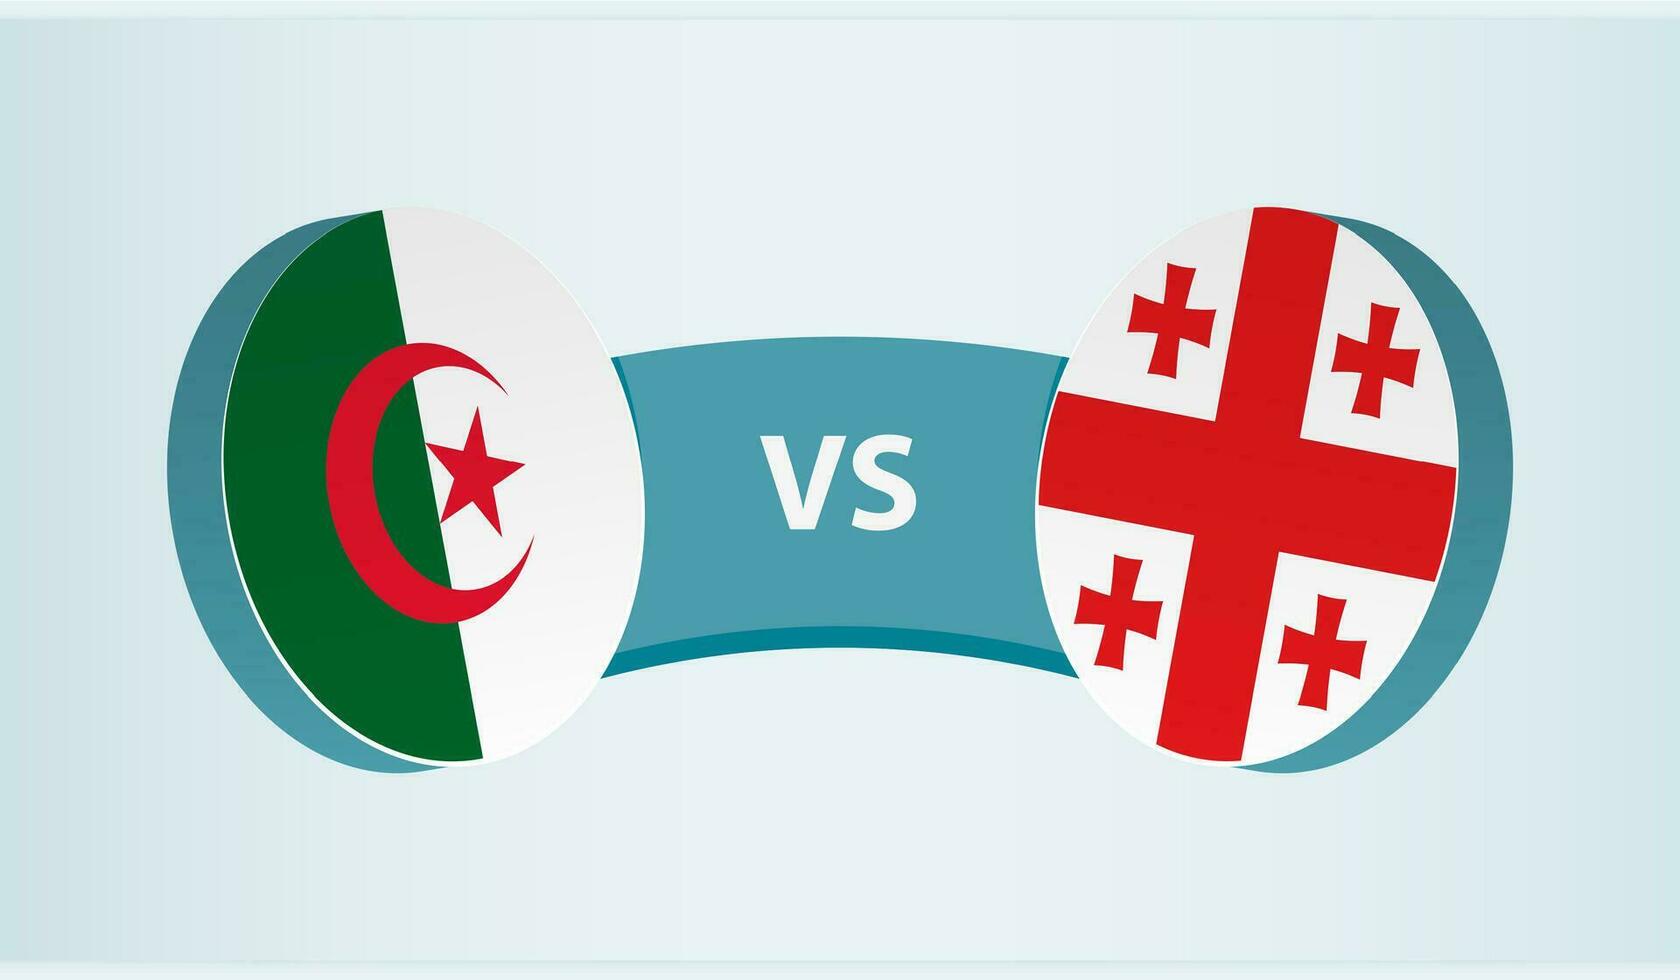 Algeria versus Georgia, team sports competition concept. vector